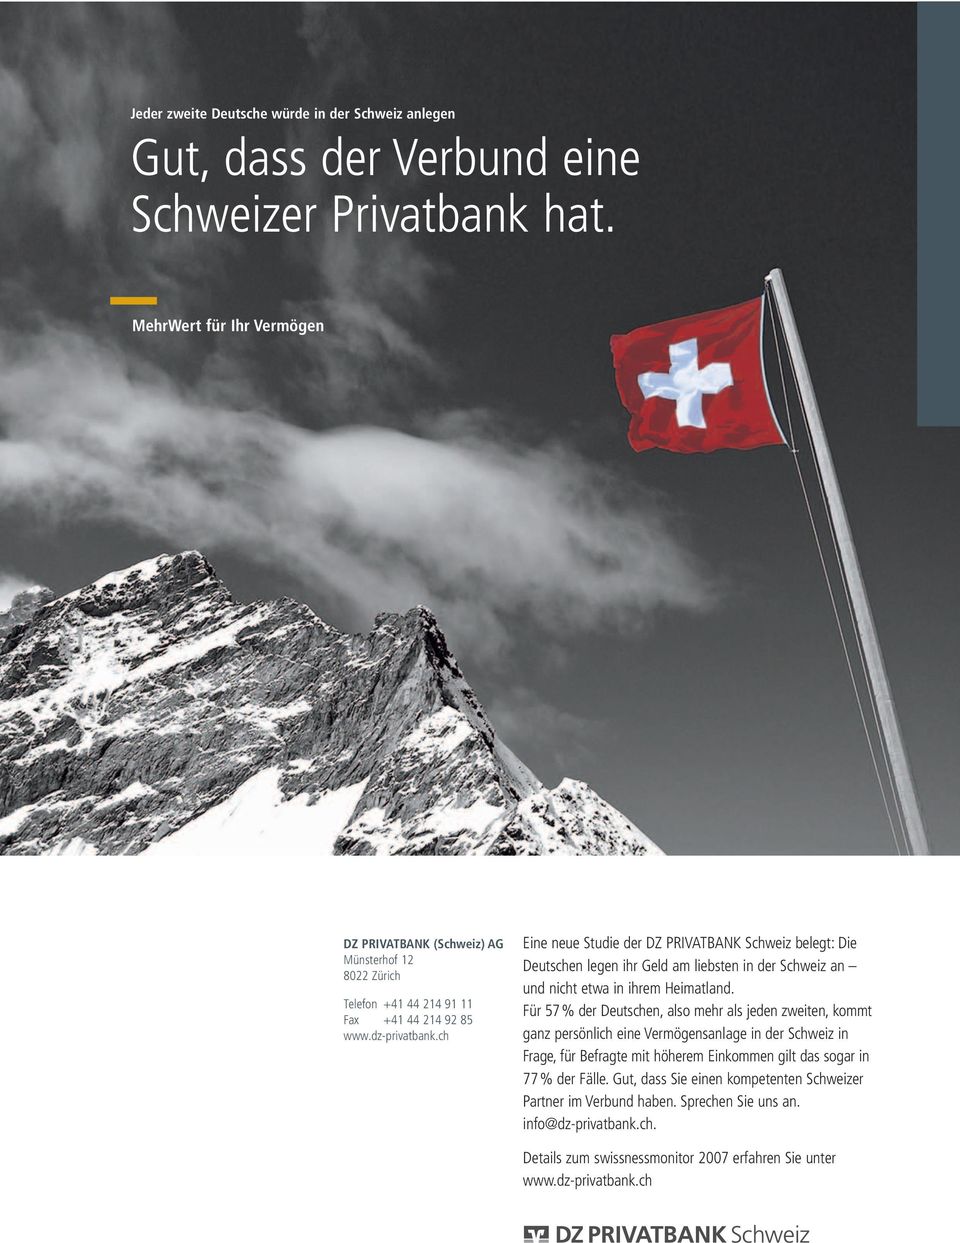 ch Eine neue Studie der DZ PRIVATBANK Schweiz belegt: Die Deutschen legen ihr Geld am liebsten in der Schweiz an nicht etwa in ihrem Heimatland.